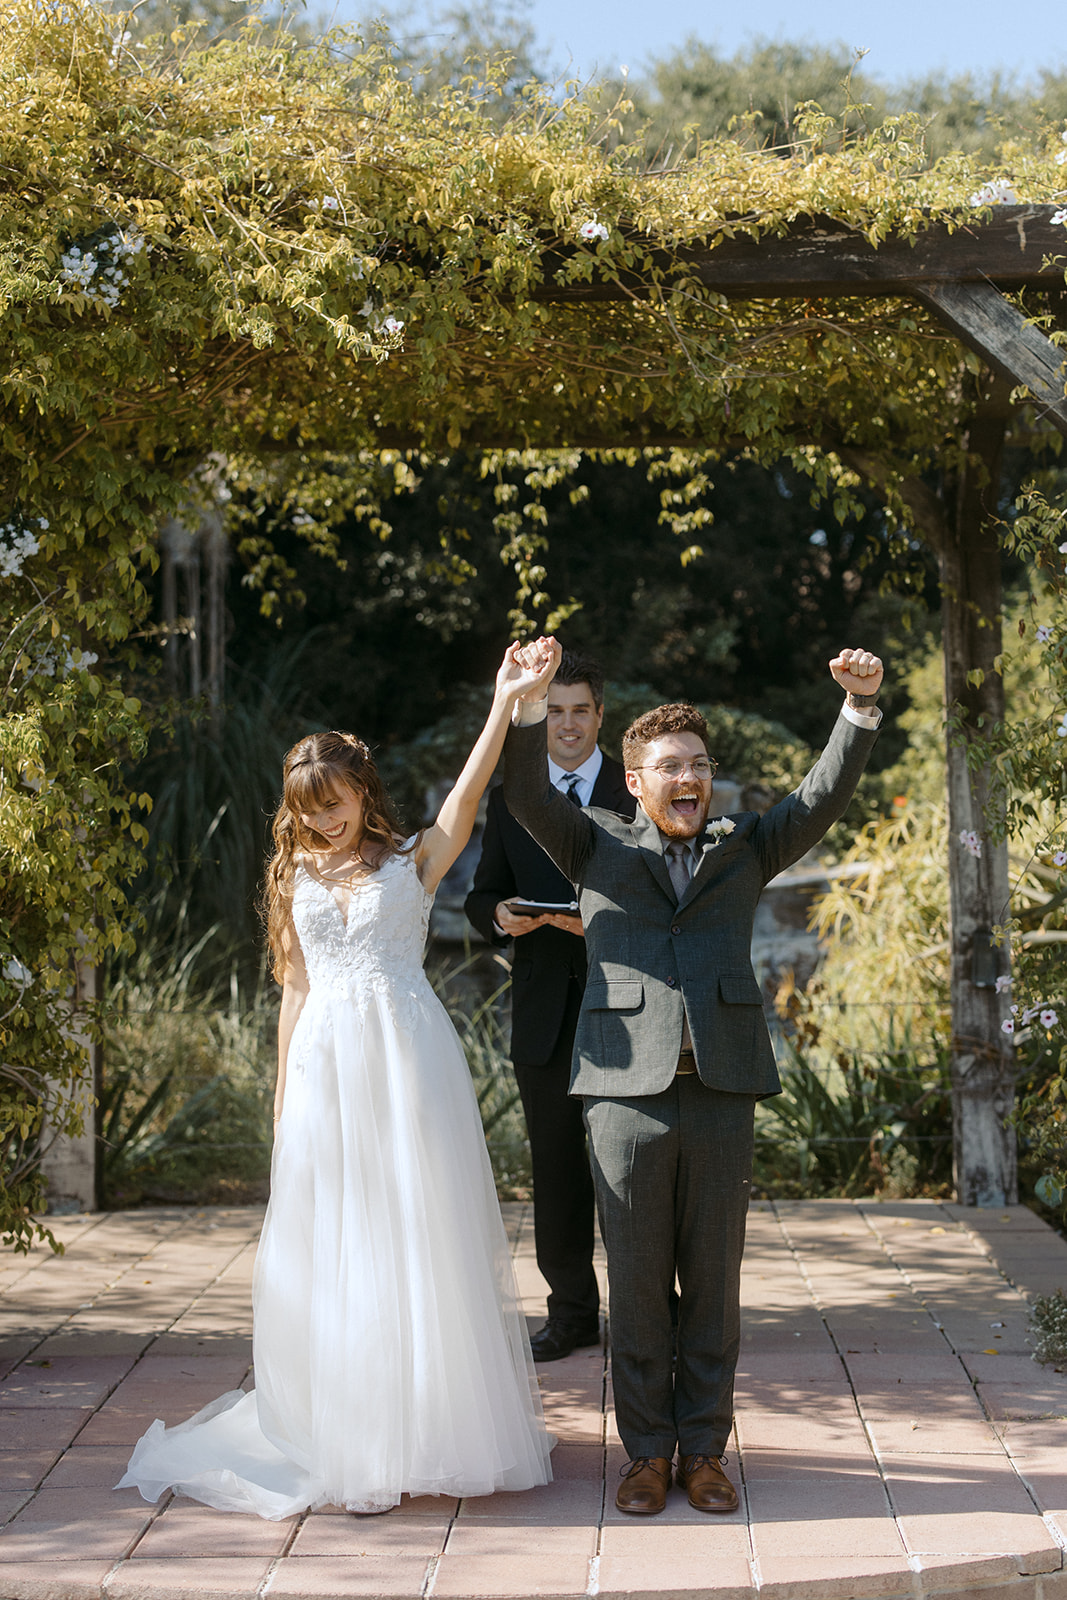 Bride and groom cheering during wedding ceremony at La Arboleda in California